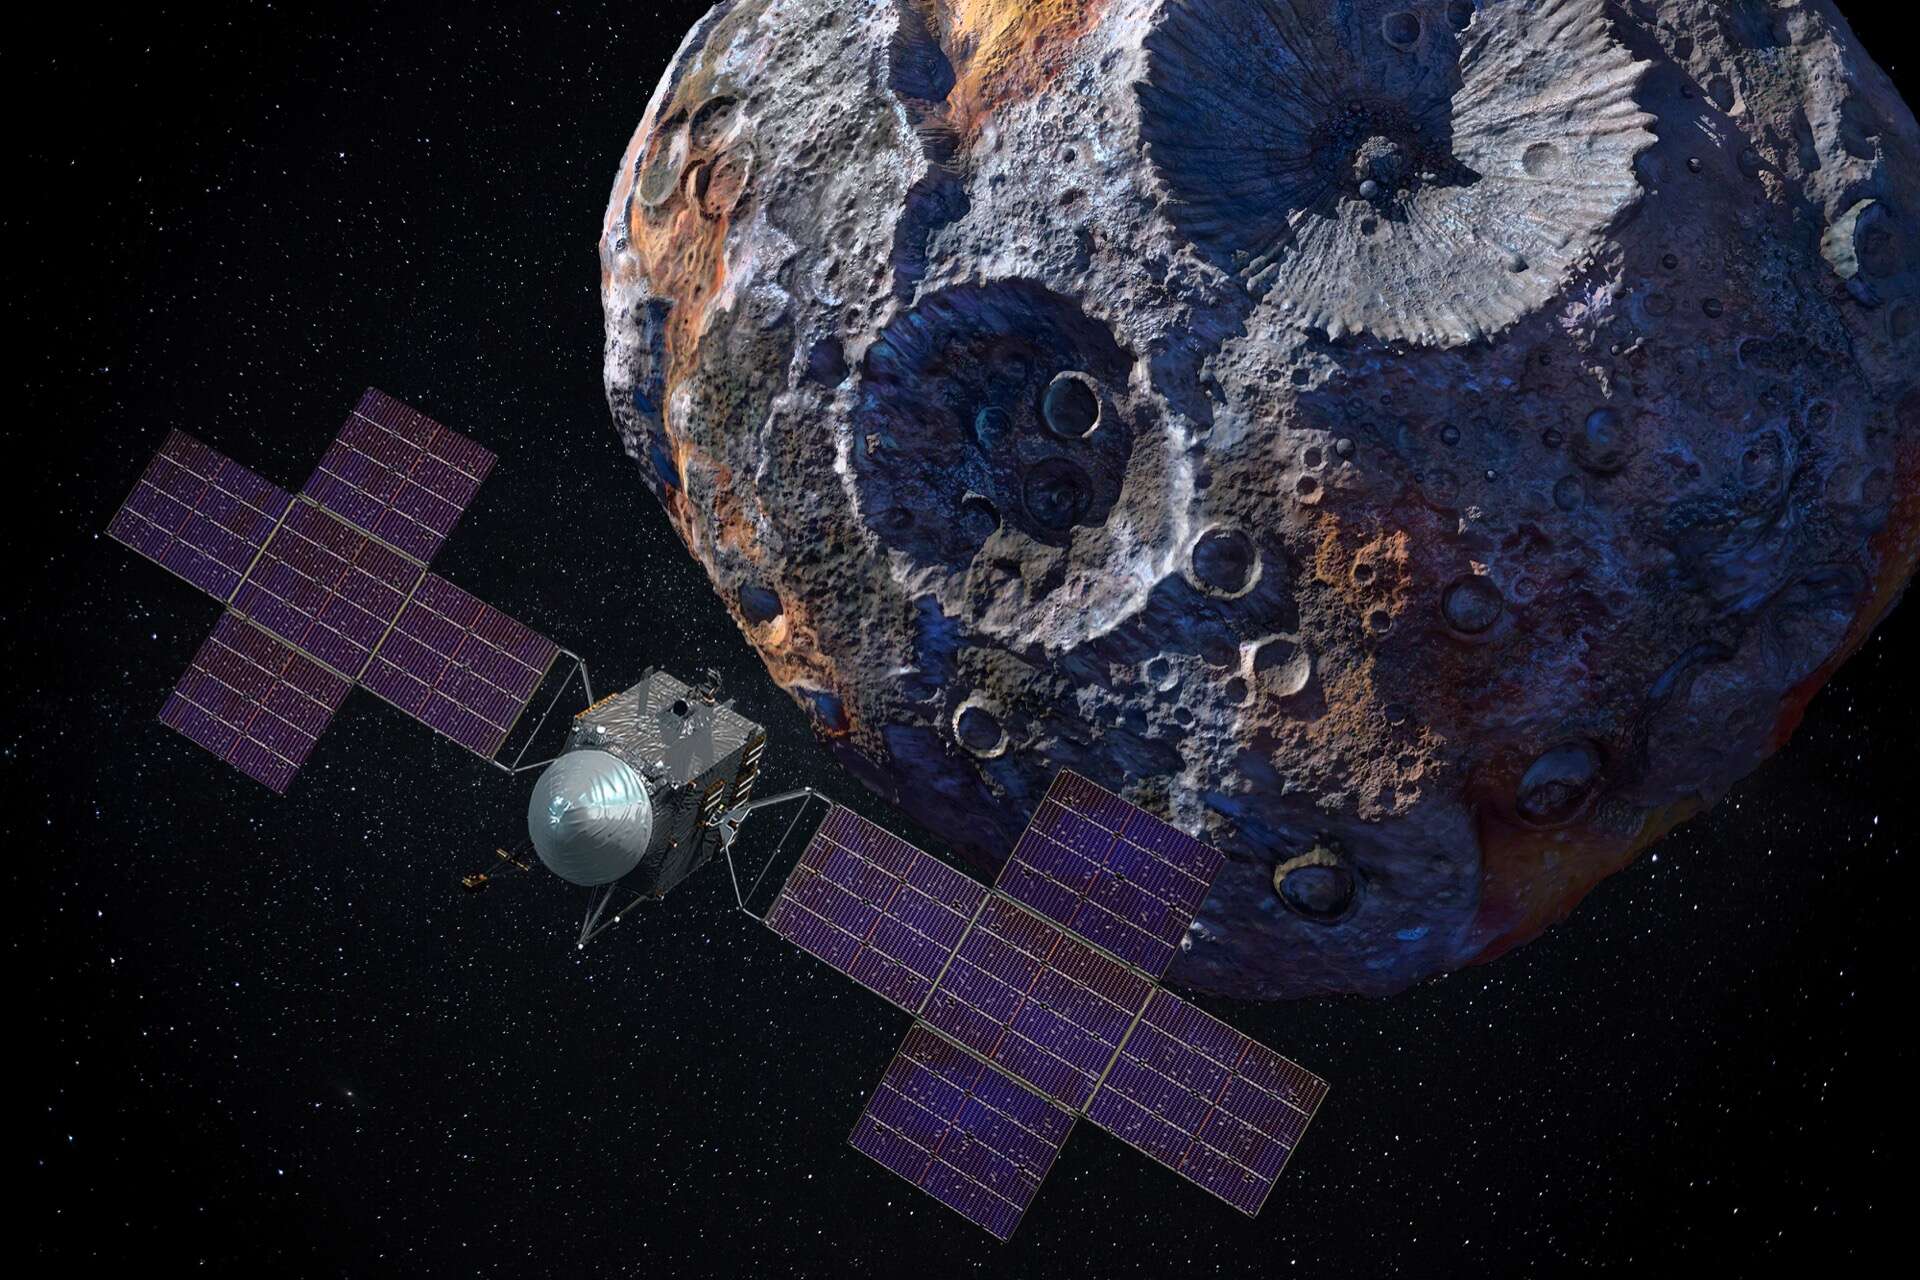 La NASA invia una sonda per esplorare i resti di un pianeta ai confini del sistema solare